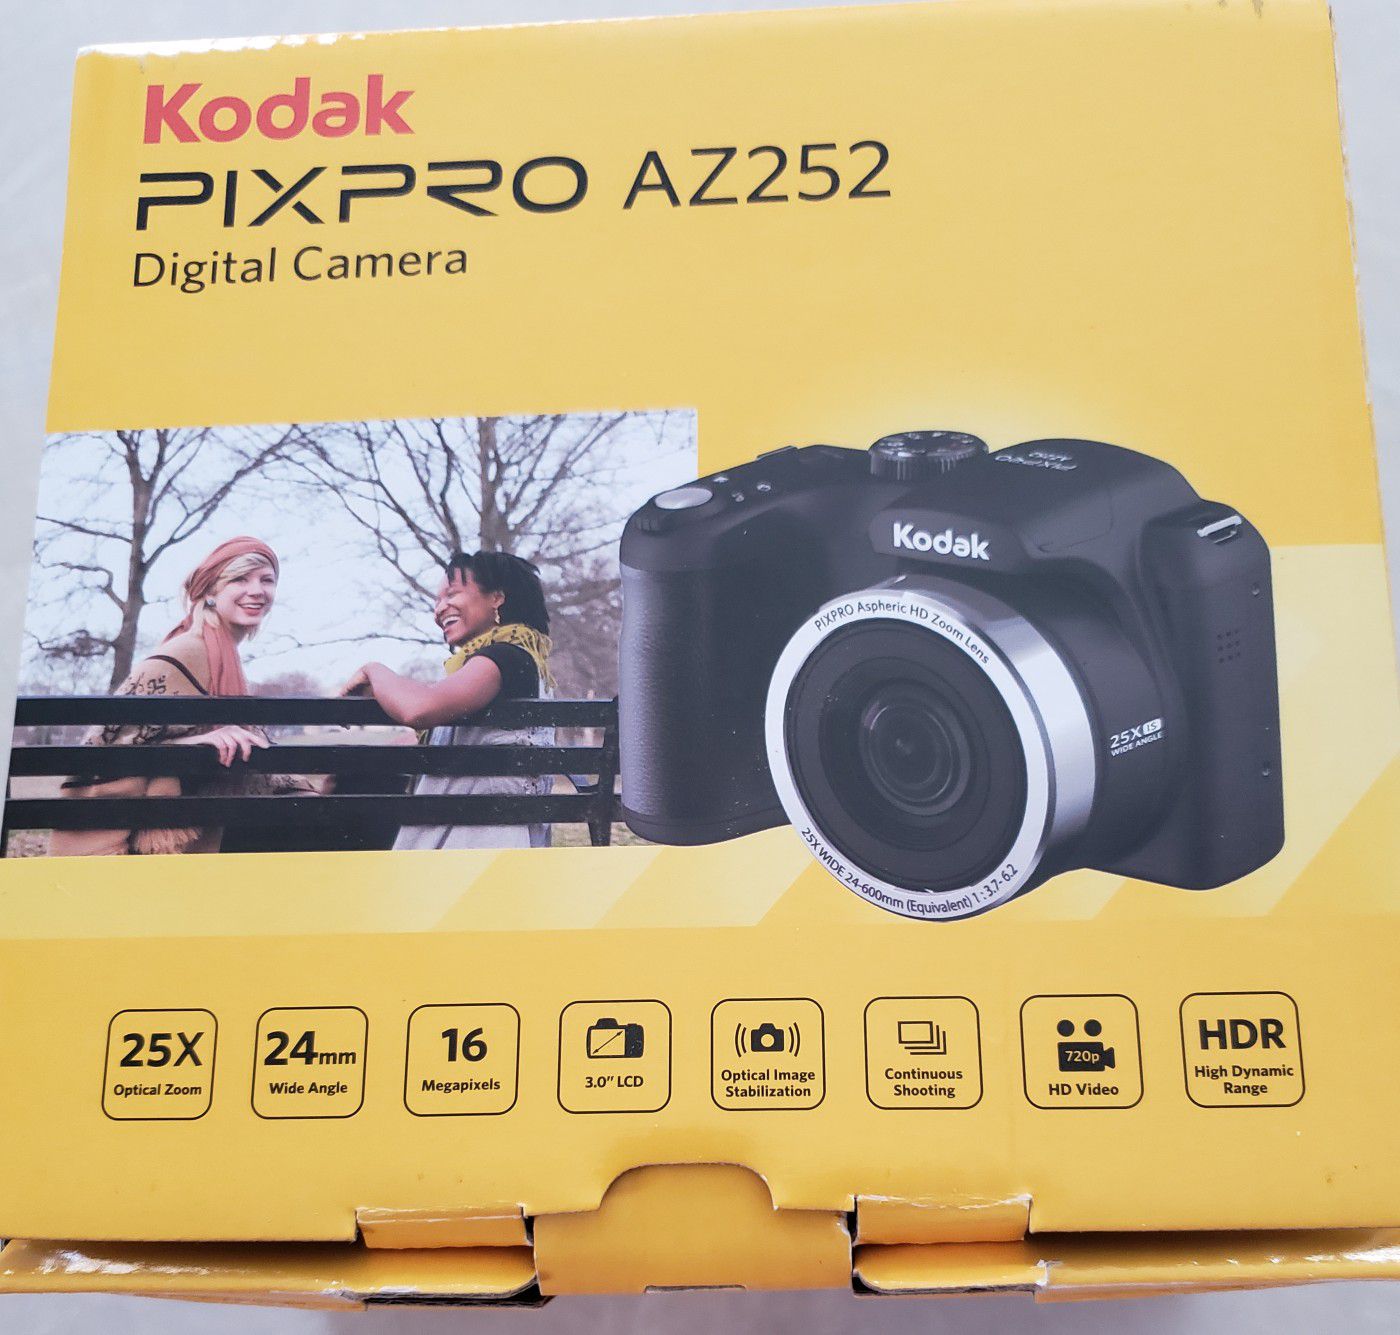 Kodak Digital camera